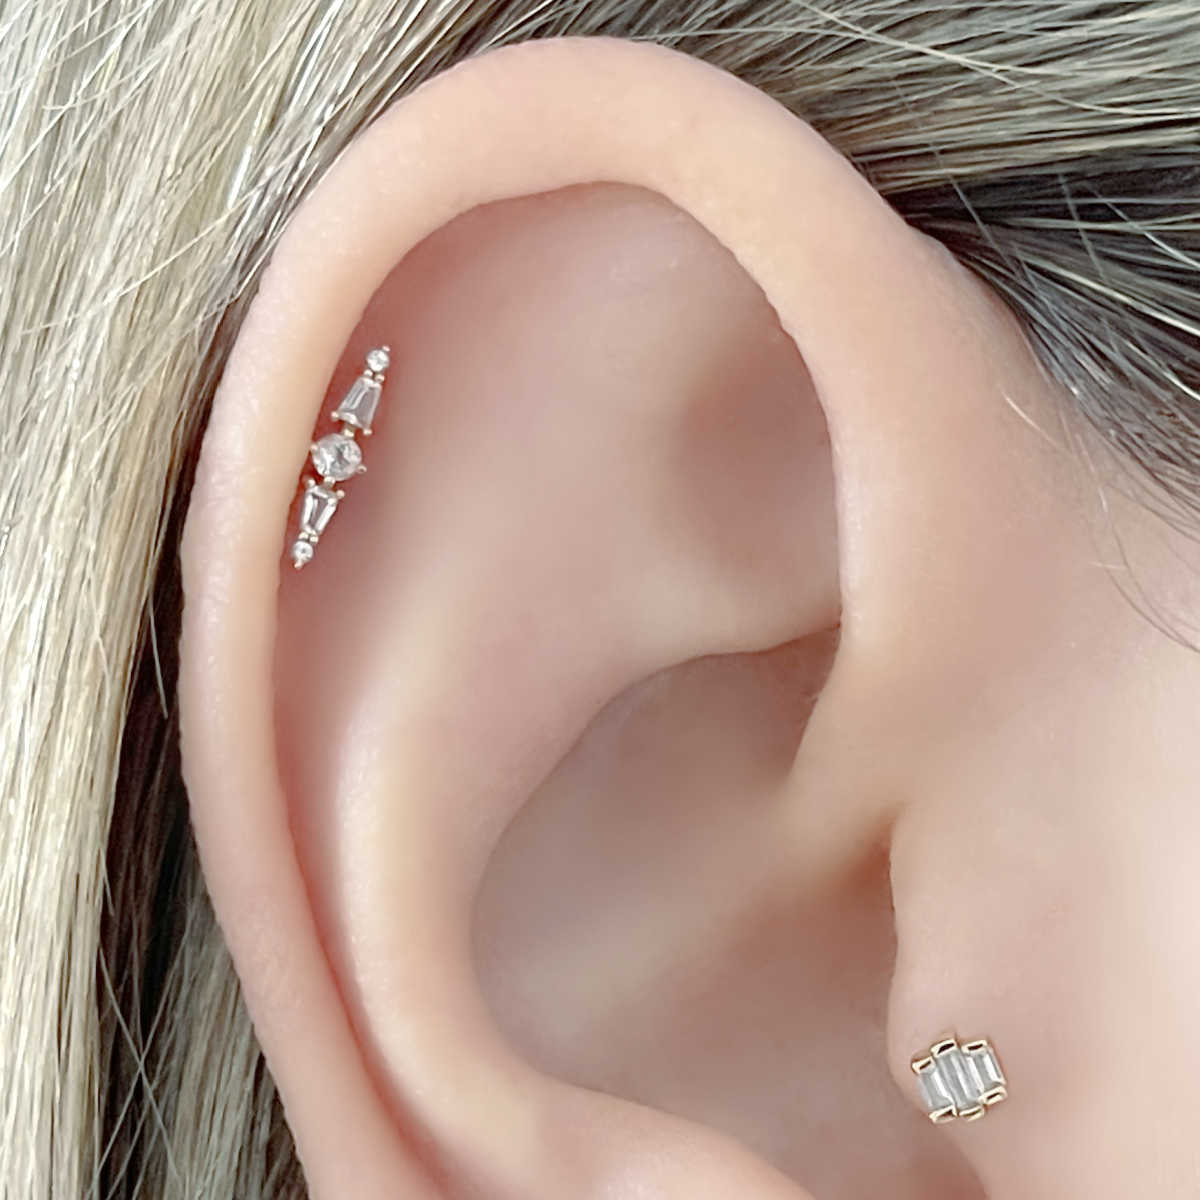 Cartilage Earrings / Flat Back Earrings - Rebel Bod